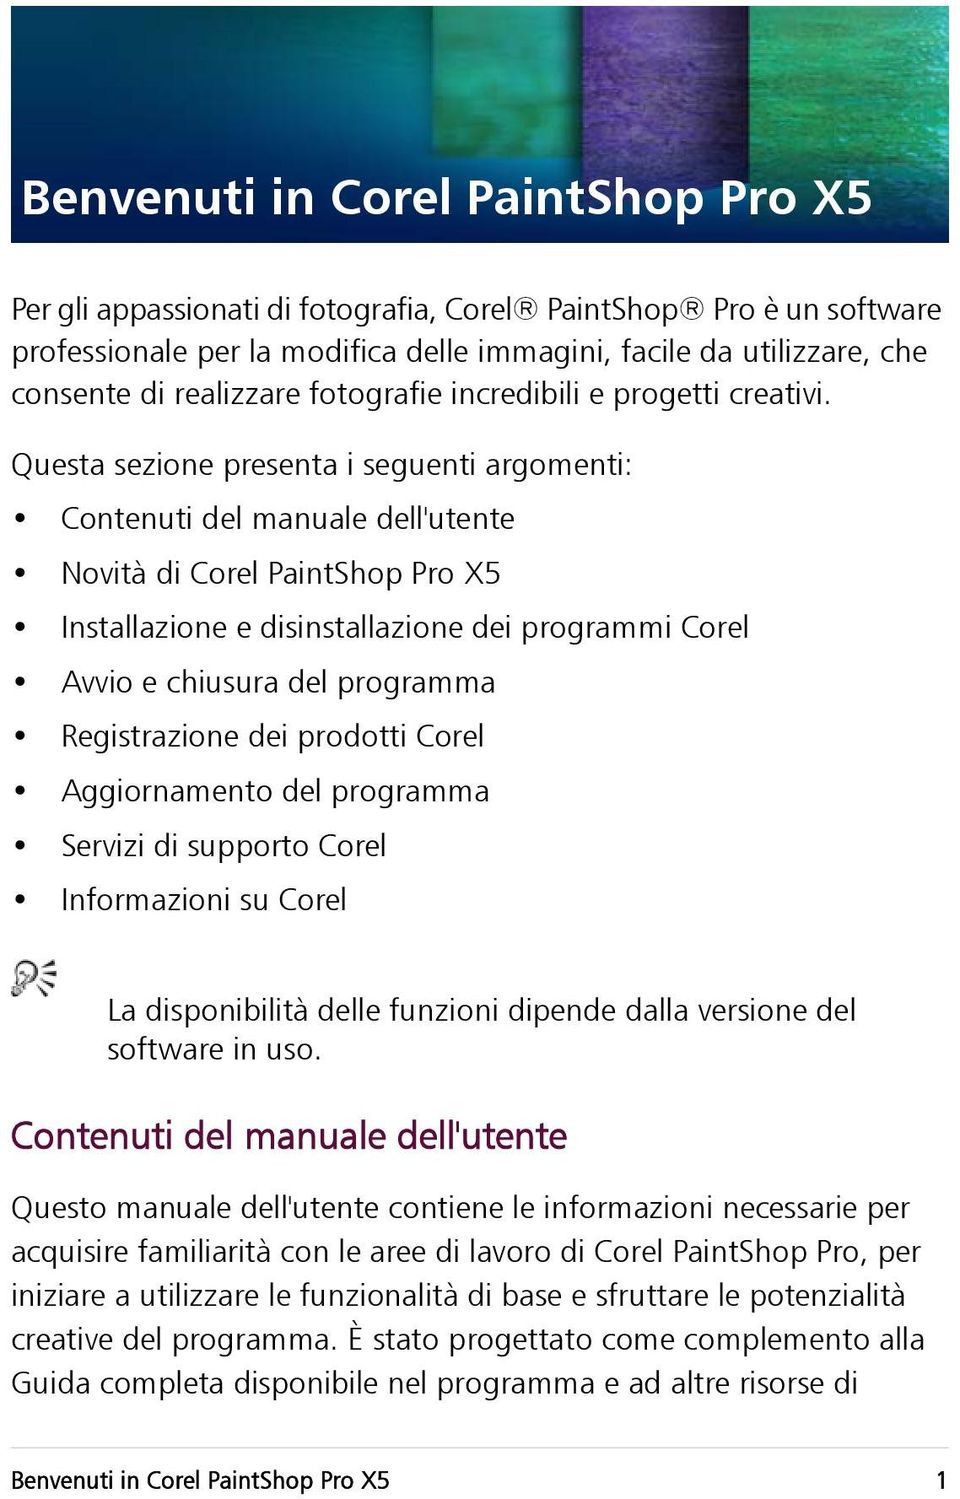 Questa sezione presenta i seguenti argomenti: Contenuti del manuale dell'utente Novità di Corel PaintShop Pro X5 Installazione e disinstallazione dei programmi Corel Avvio e chiusura del programma